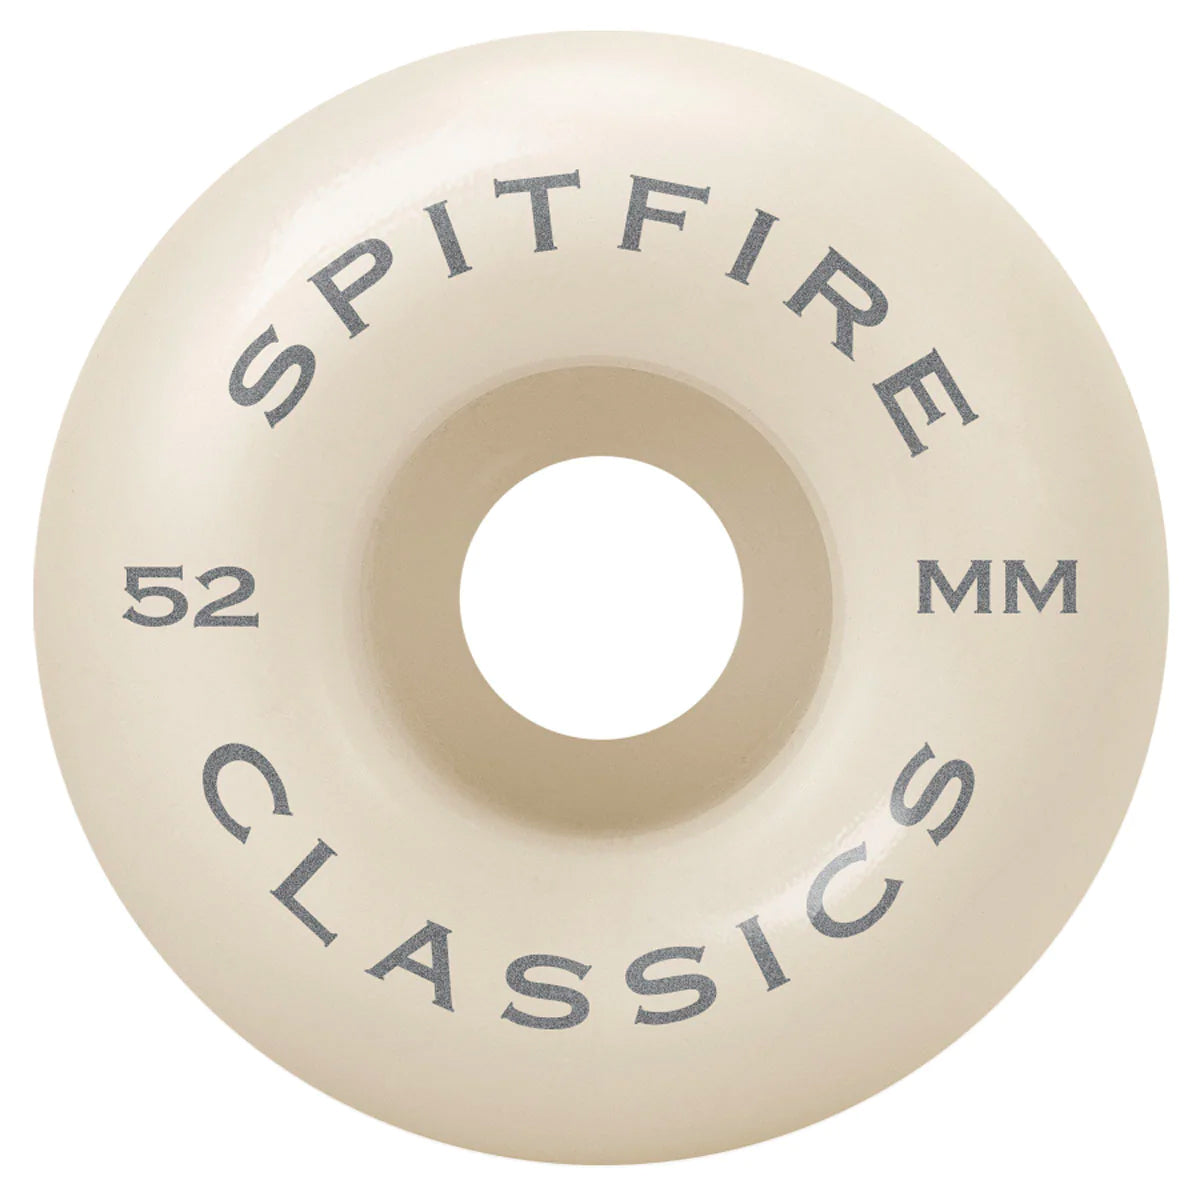 Spitfire Classics 99d - 52mm